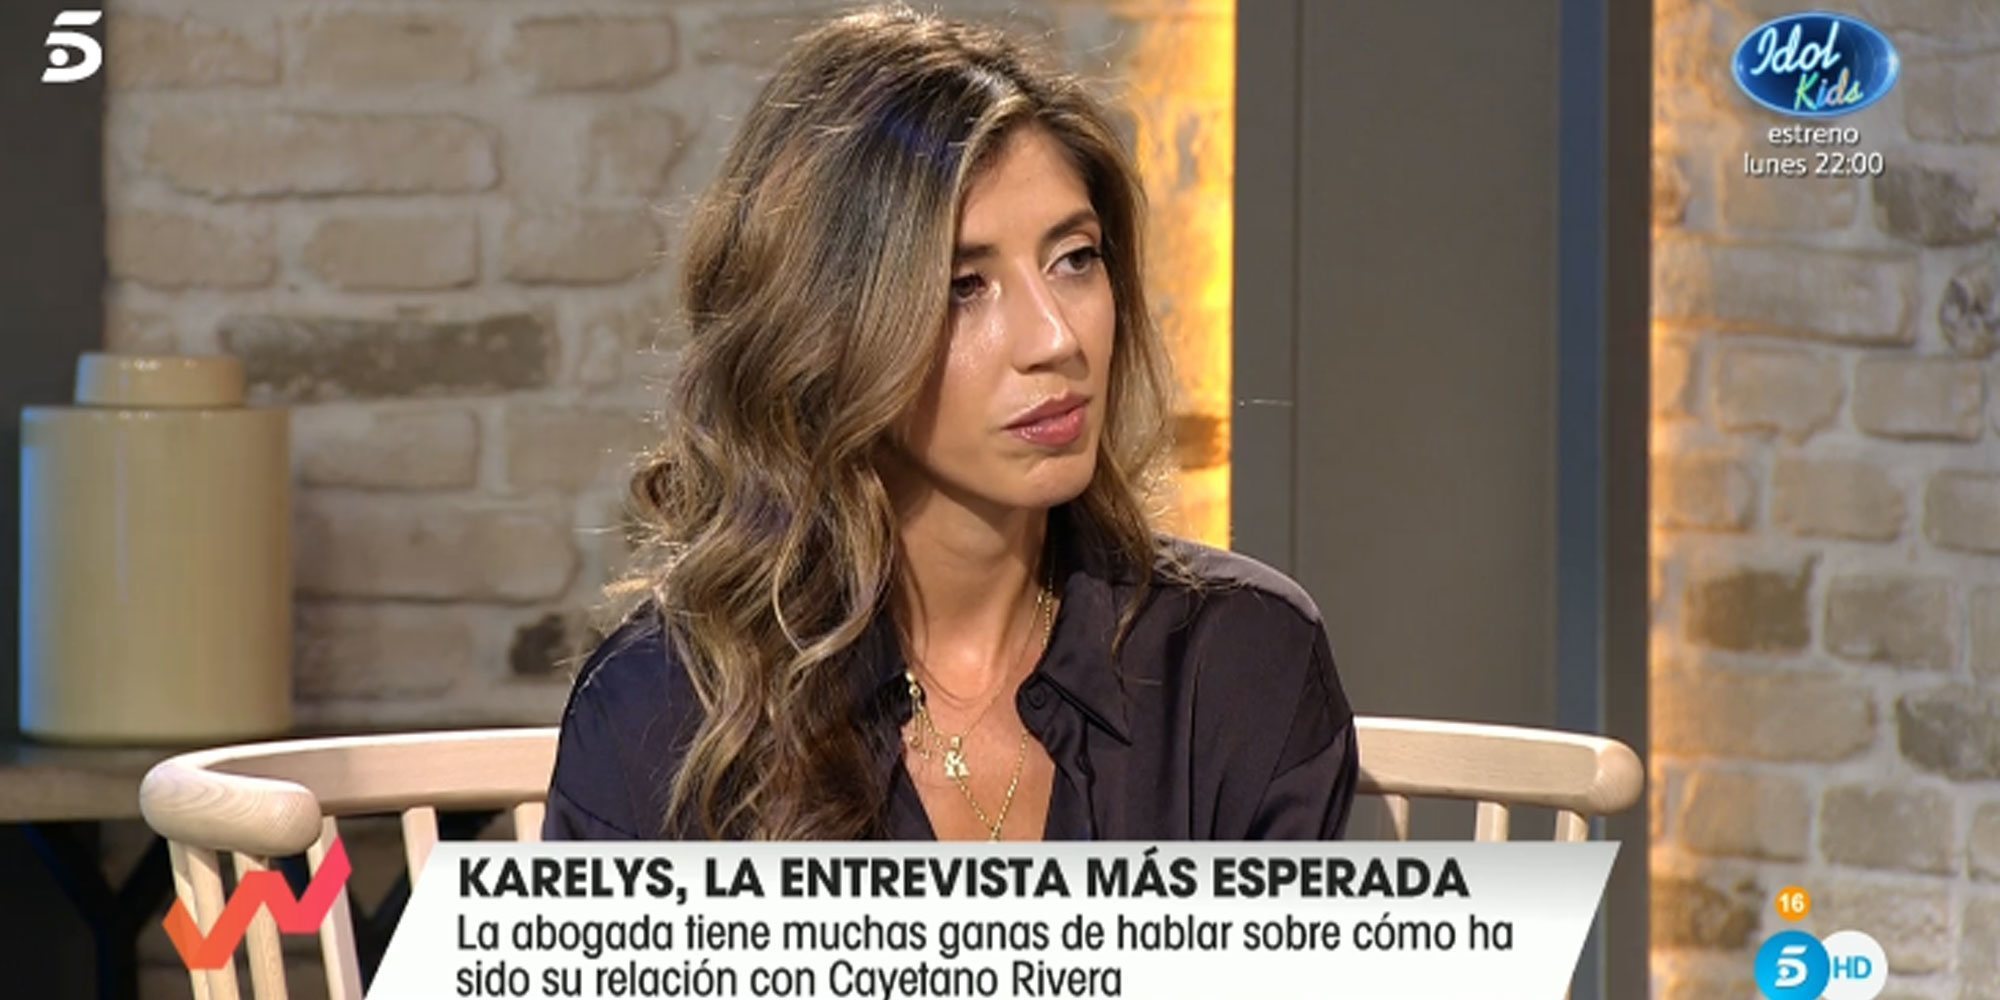 Karelys Rodríguez: "Lo que pasó no es algo de lo que me sienta orgullosa. Mi error fue enamorarme de Cayetano Rivera"